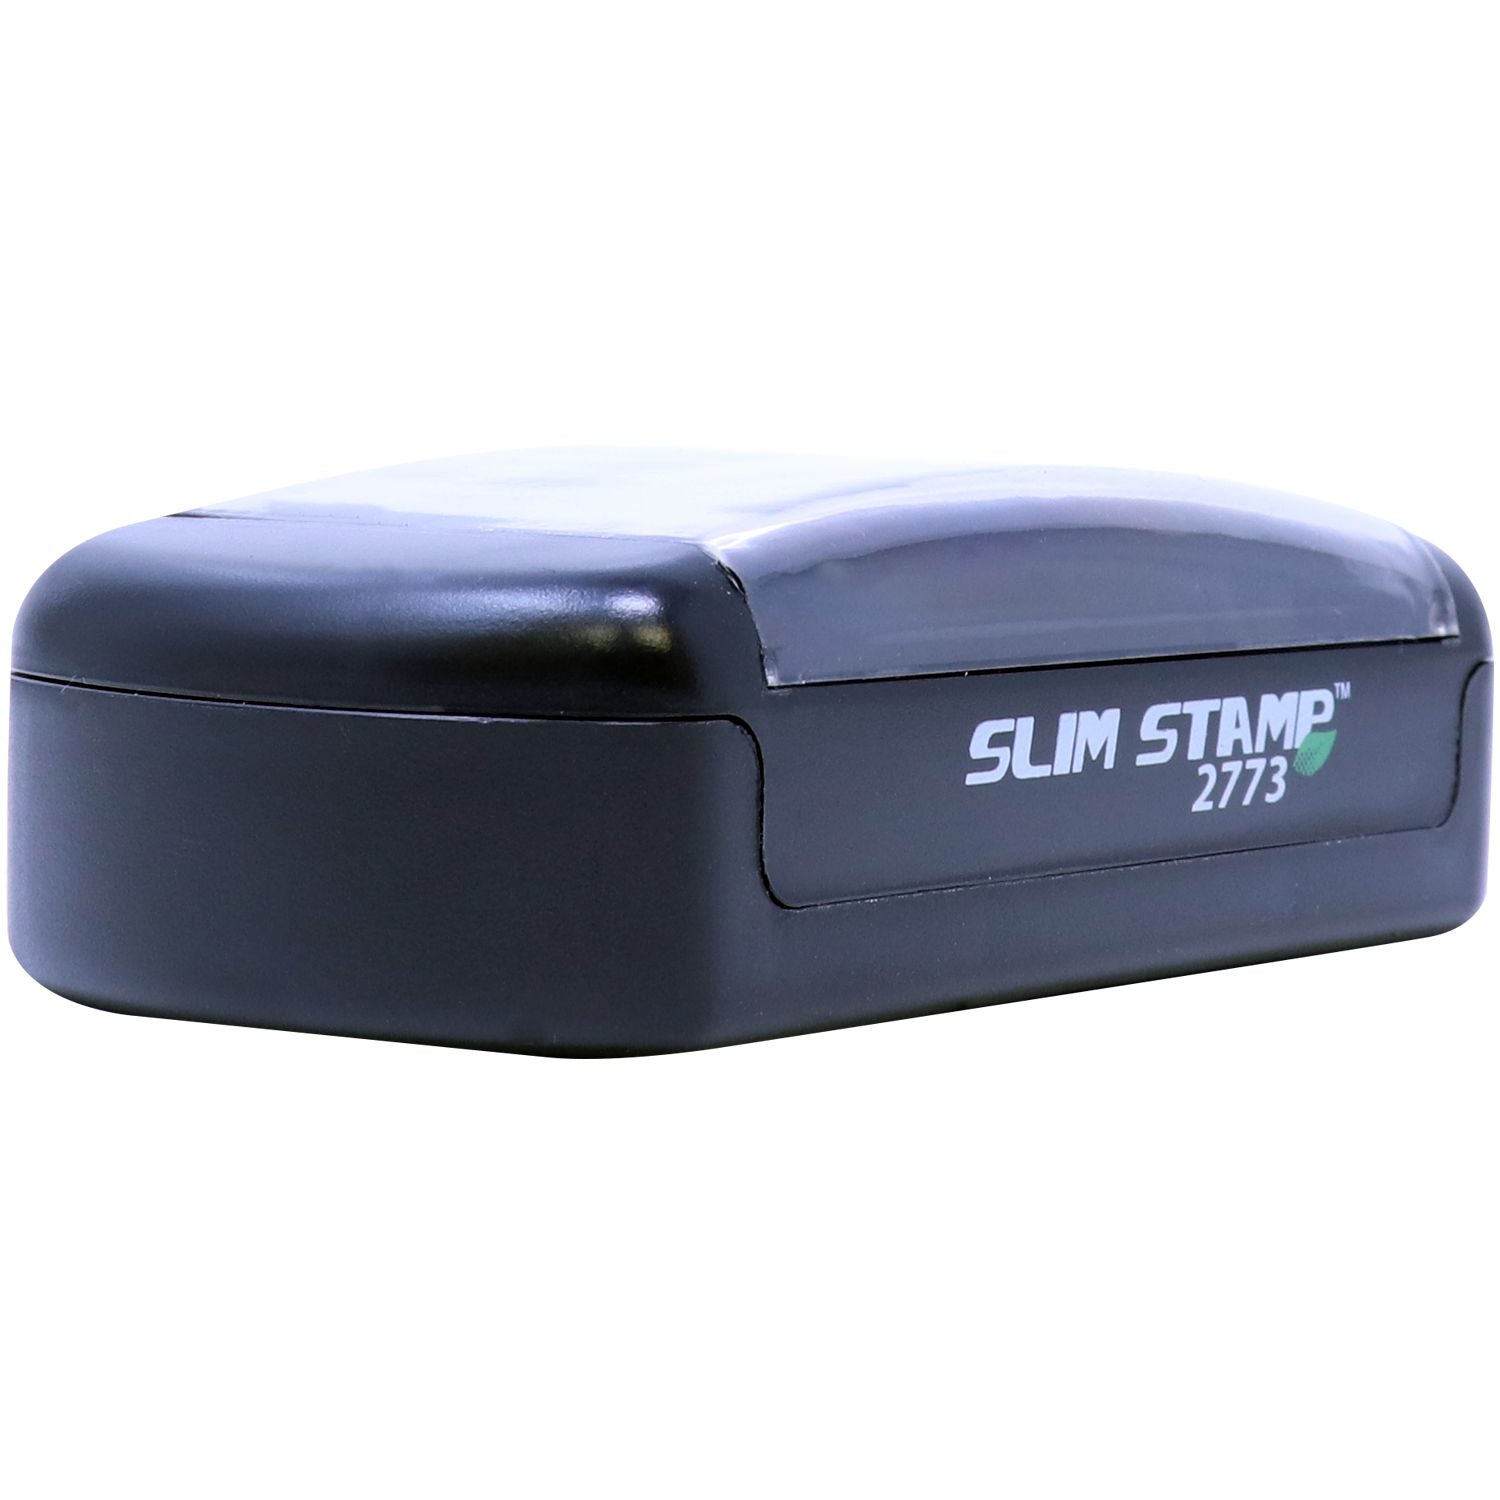 Slimstamp Custom Stamp 2773 Front Side